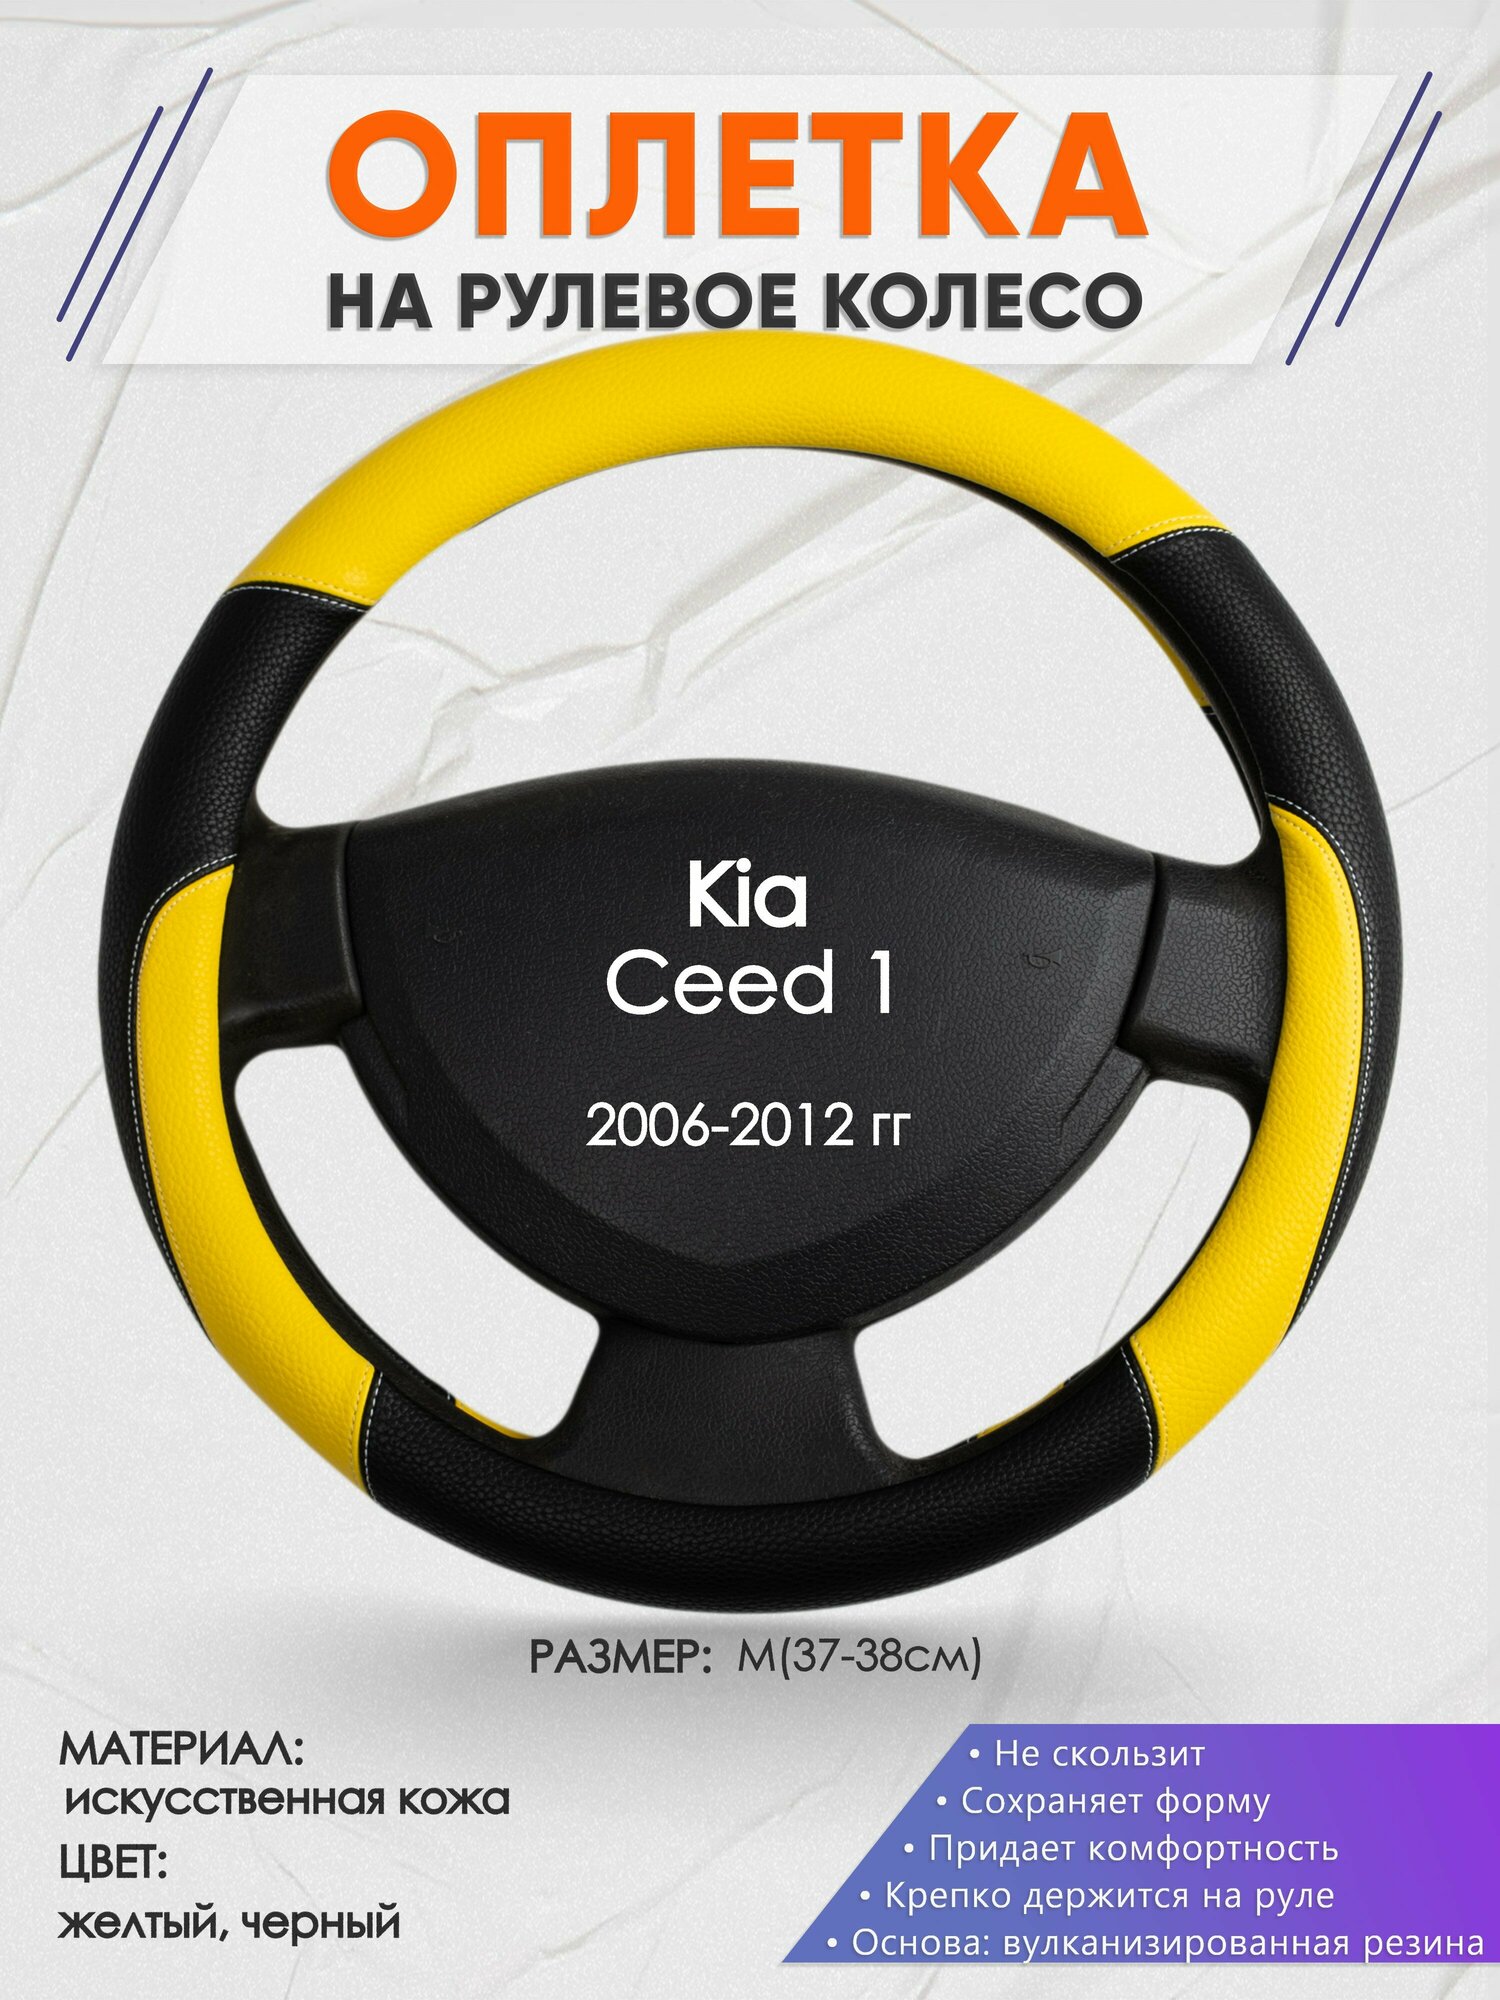 Оплетка на руль для Kia Ceed 1(Киа Сид 1 поколения) 2006-2012, M(37-38см), Искусственная кожа 64